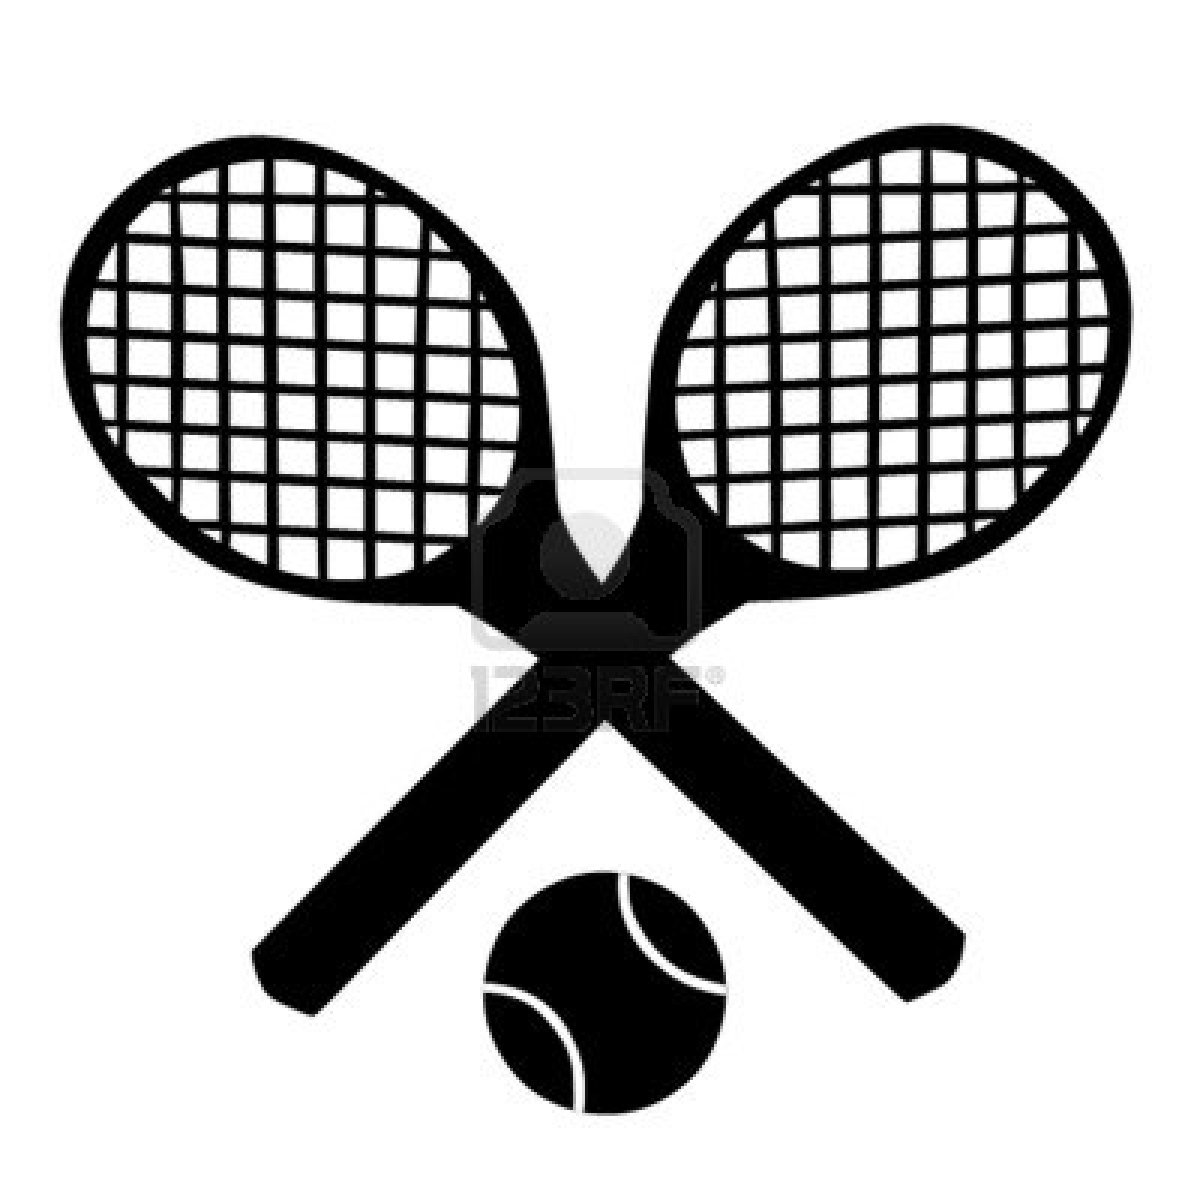 Clip Art Tennis Tennis Racket